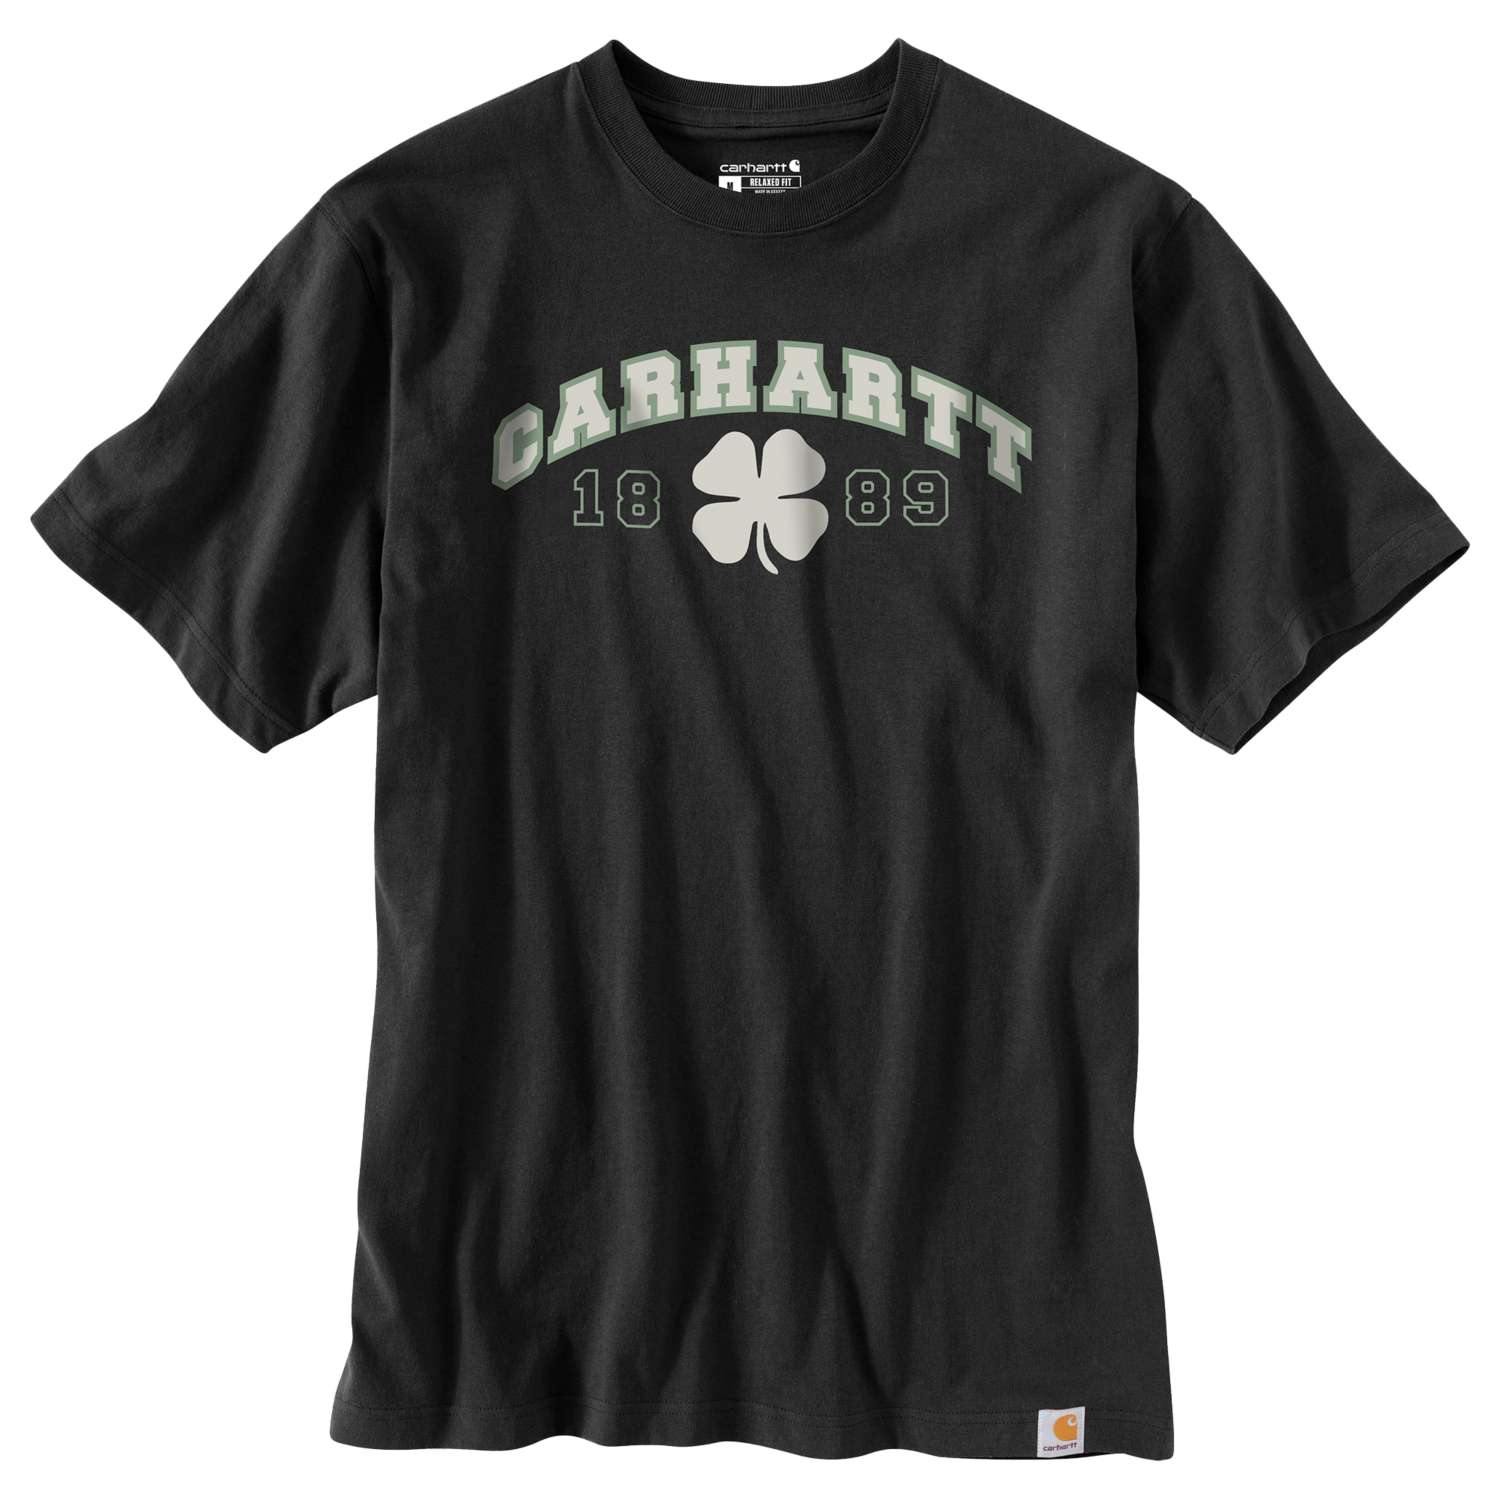 carhartt® Herren-T-Shirt »RELAXED FIT S/S SHAMROCK T-SHIRT« - Gr. S, black - erhältlich bei ❣ HUG Technik ✓